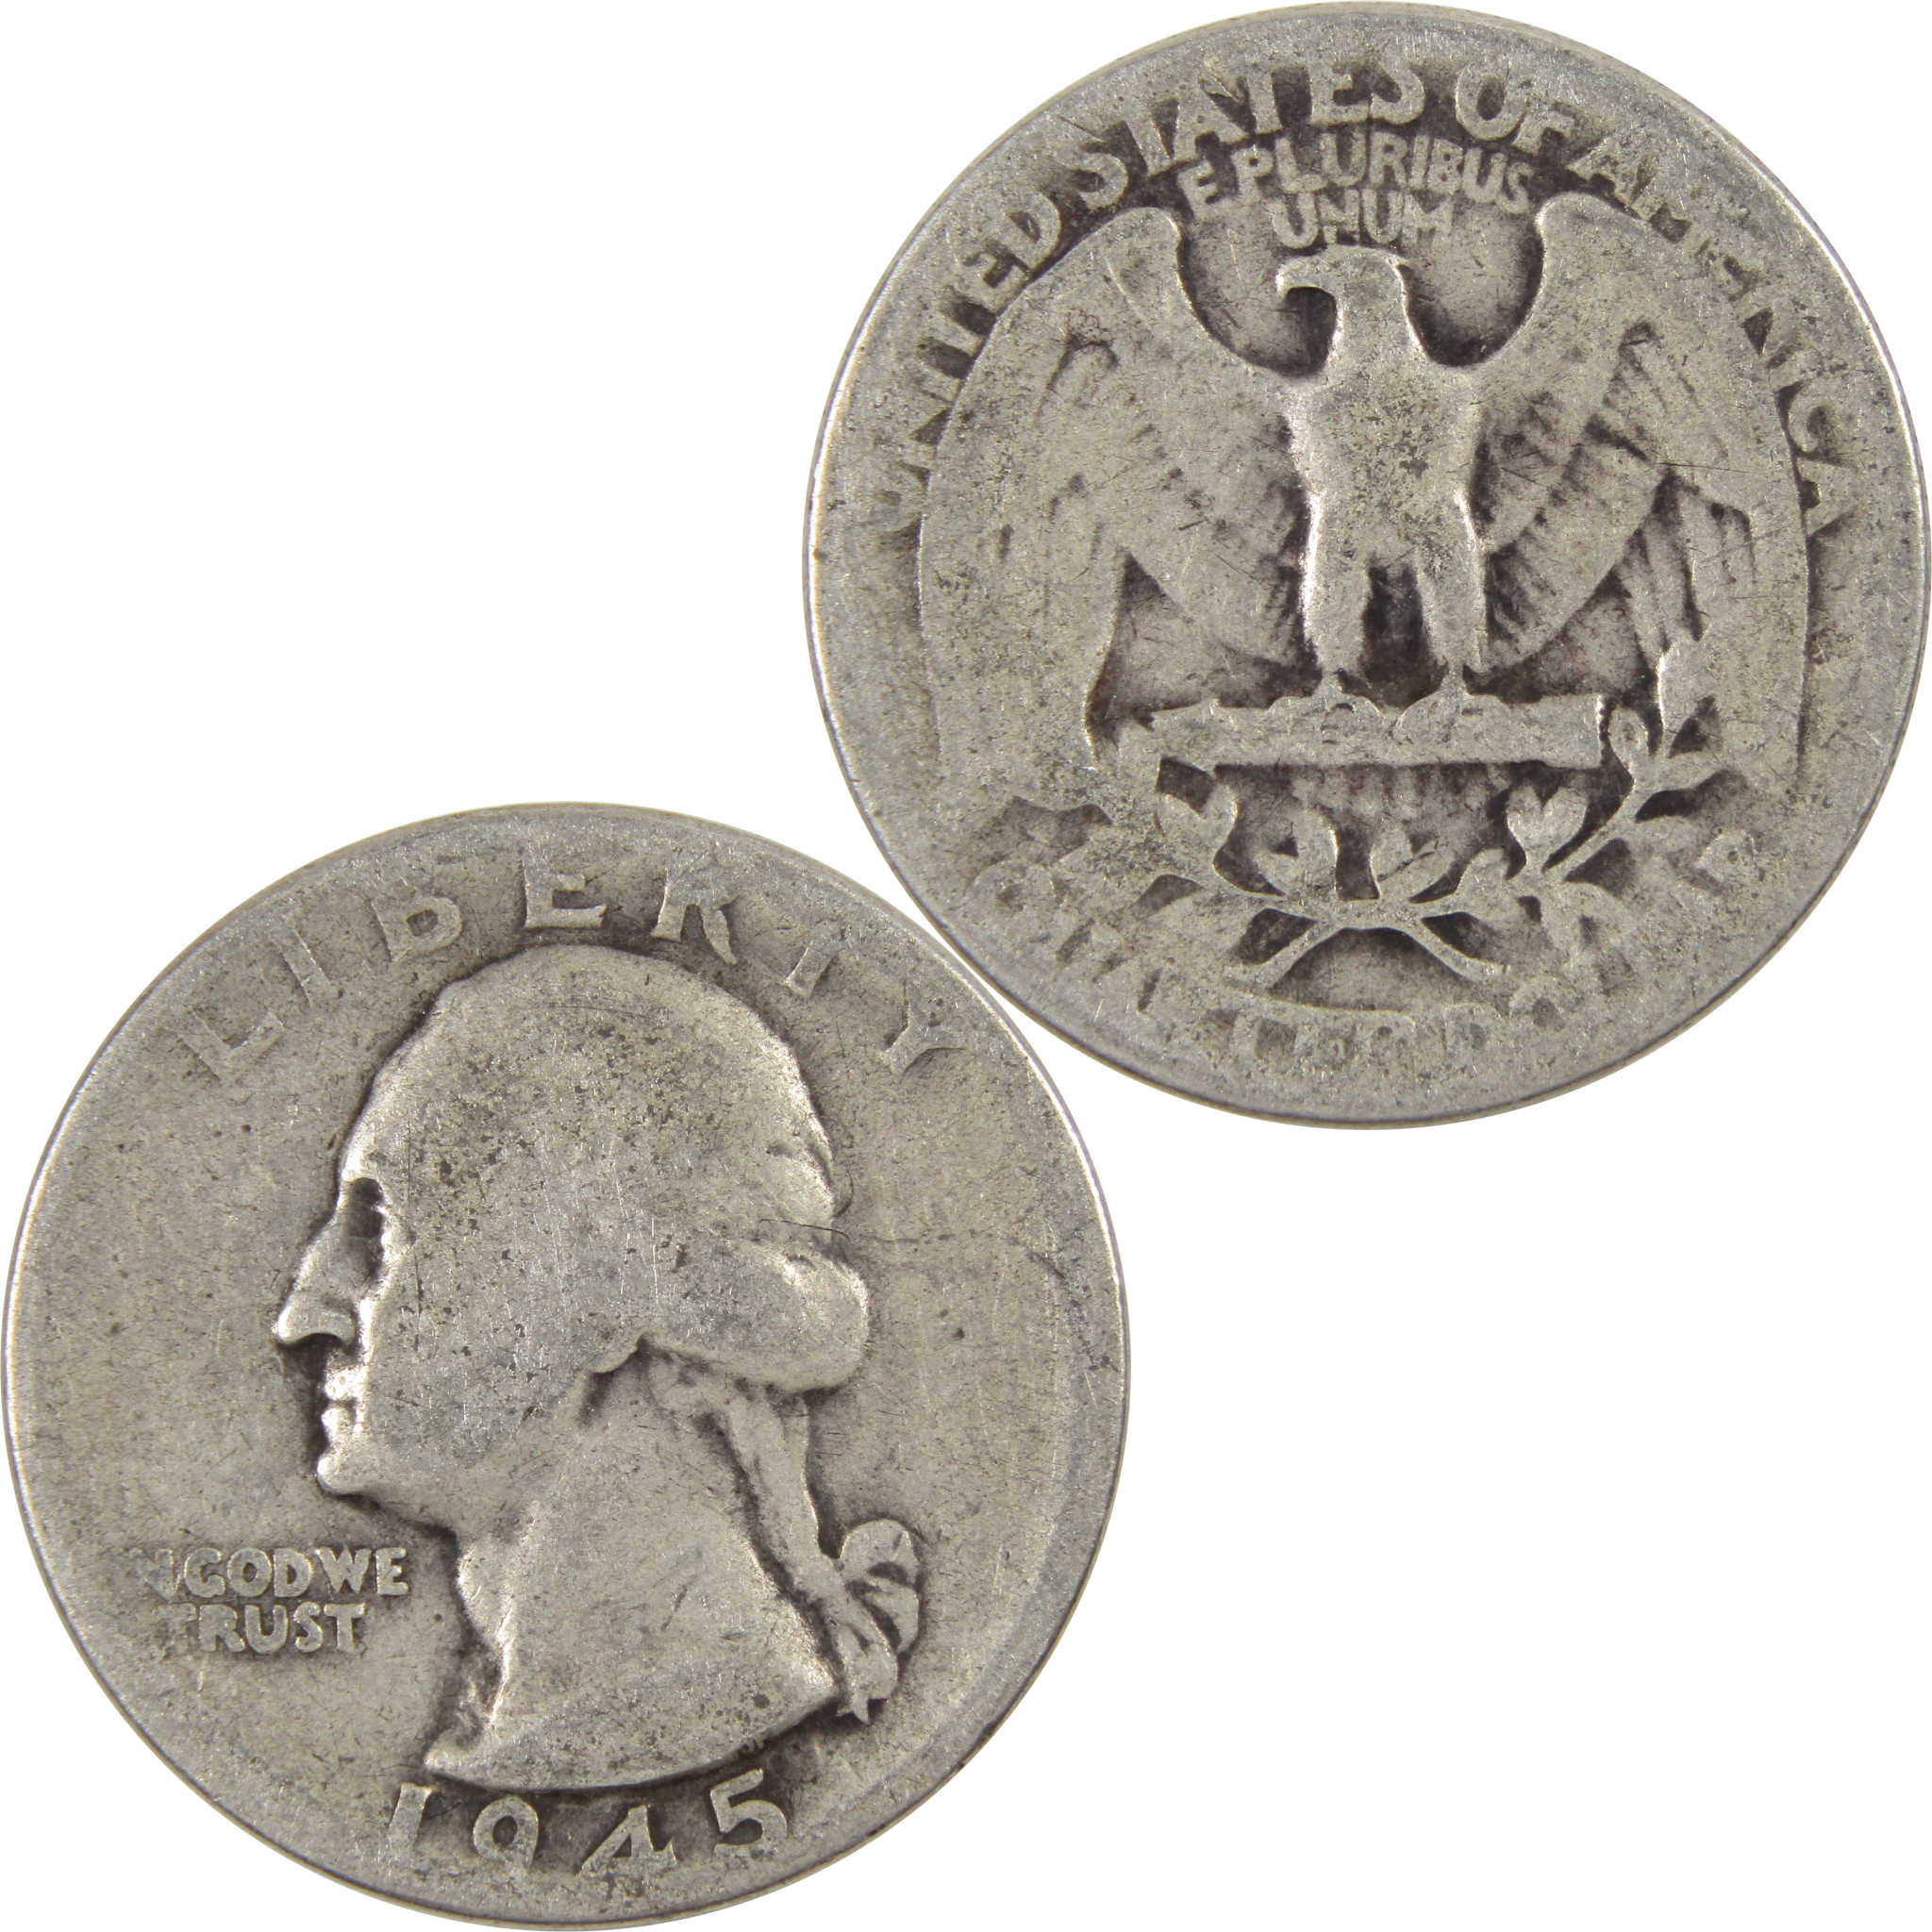 1945 Washington Quarter AG About Good 90% Silver 25c Coin